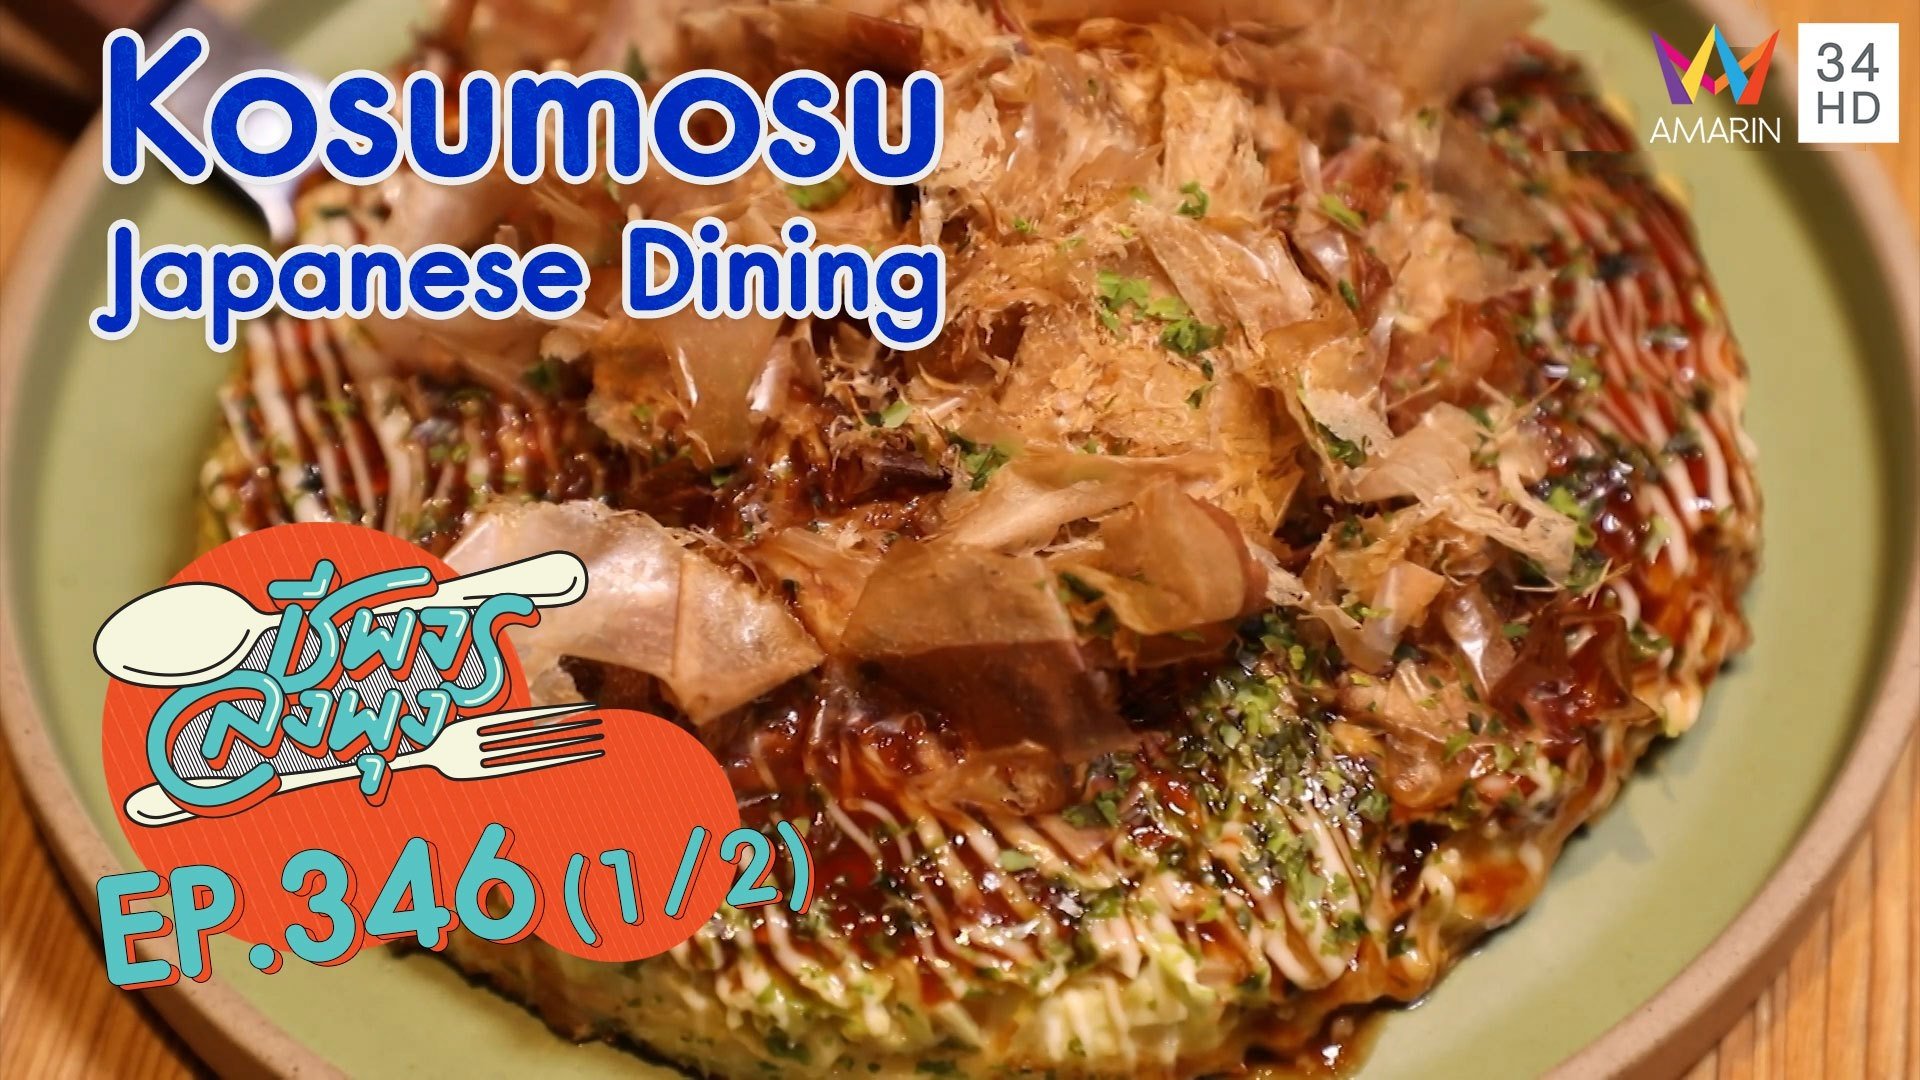 อาหารญี่ปุ่น รสชาติญี่ปุ่นแท้ๆ @ ร้าน Kosumosu Japanese Dining | ชีพจรลงพุง | 28 พ.ย. 64 (1/2) | AMARIN TVHD34